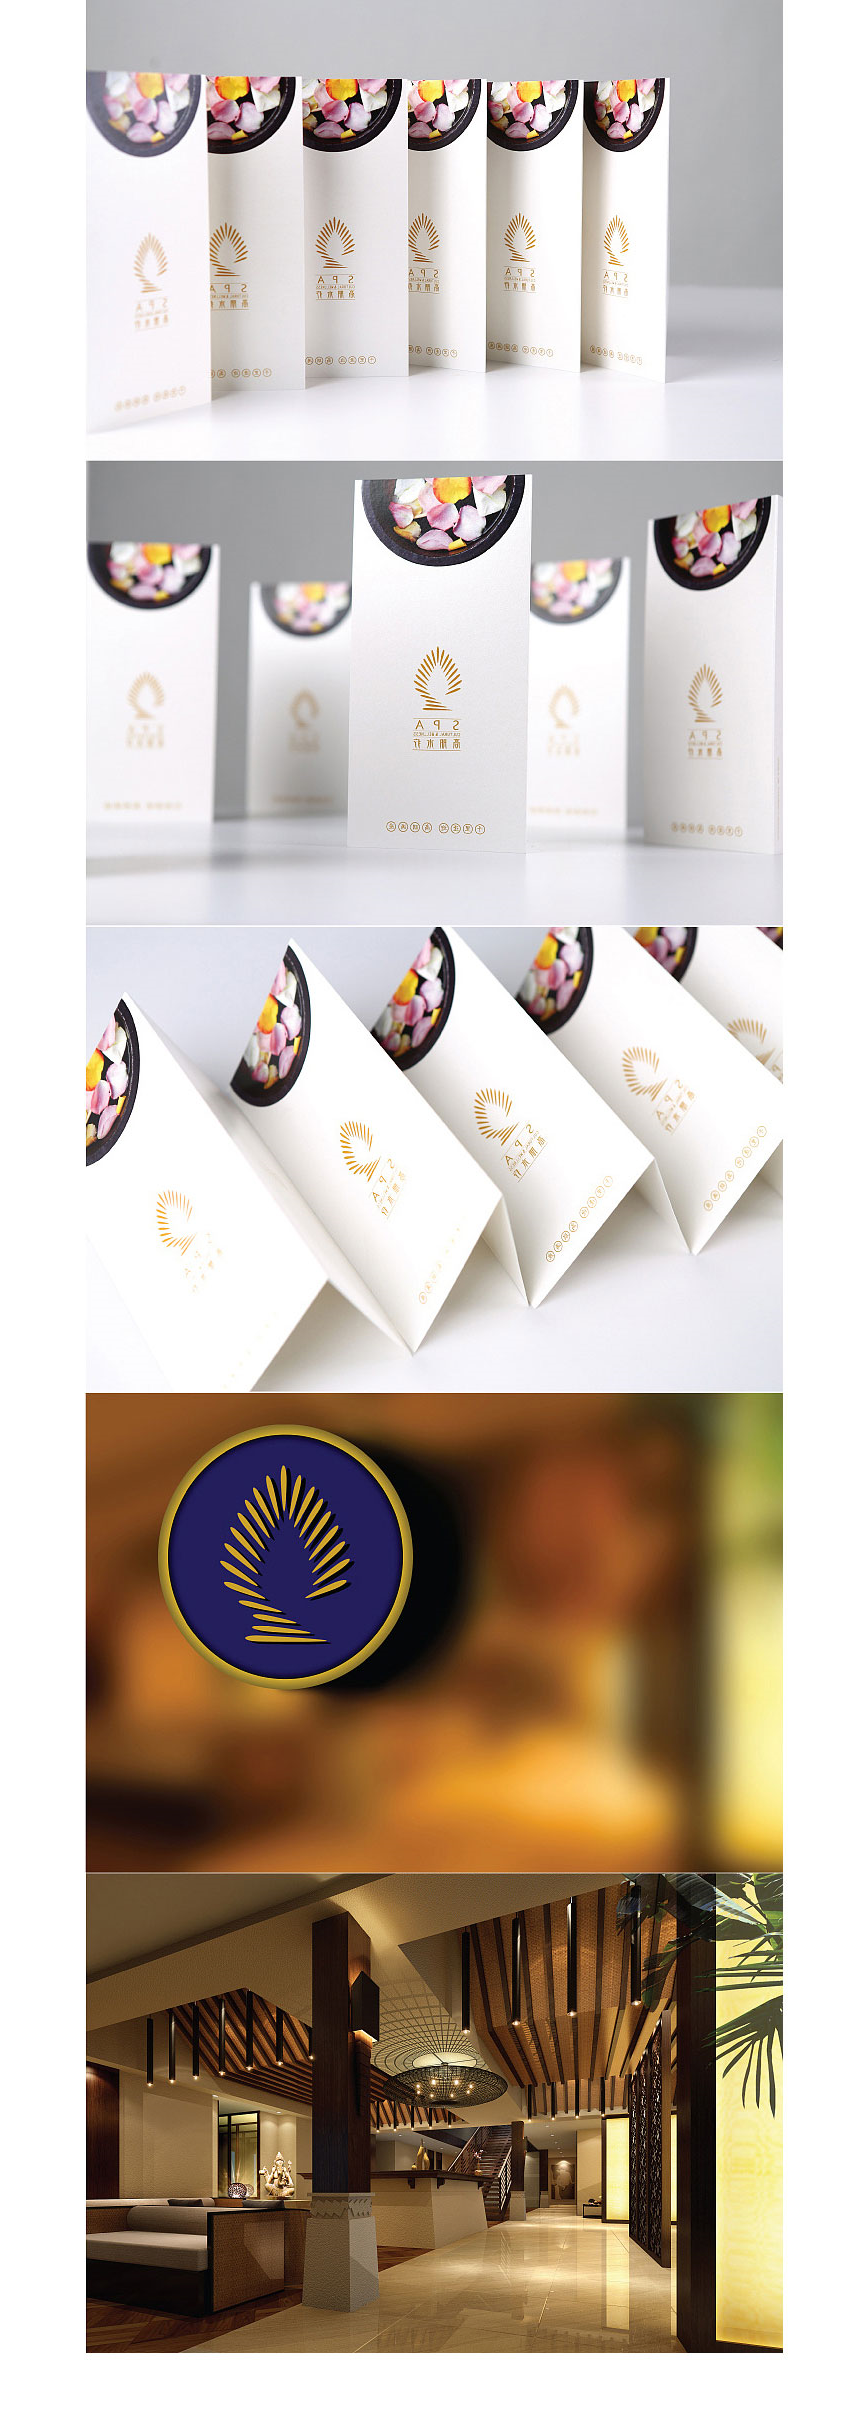 高朋水疗商标设计欣赏_东莞服务行业商标设计公司专业品牌